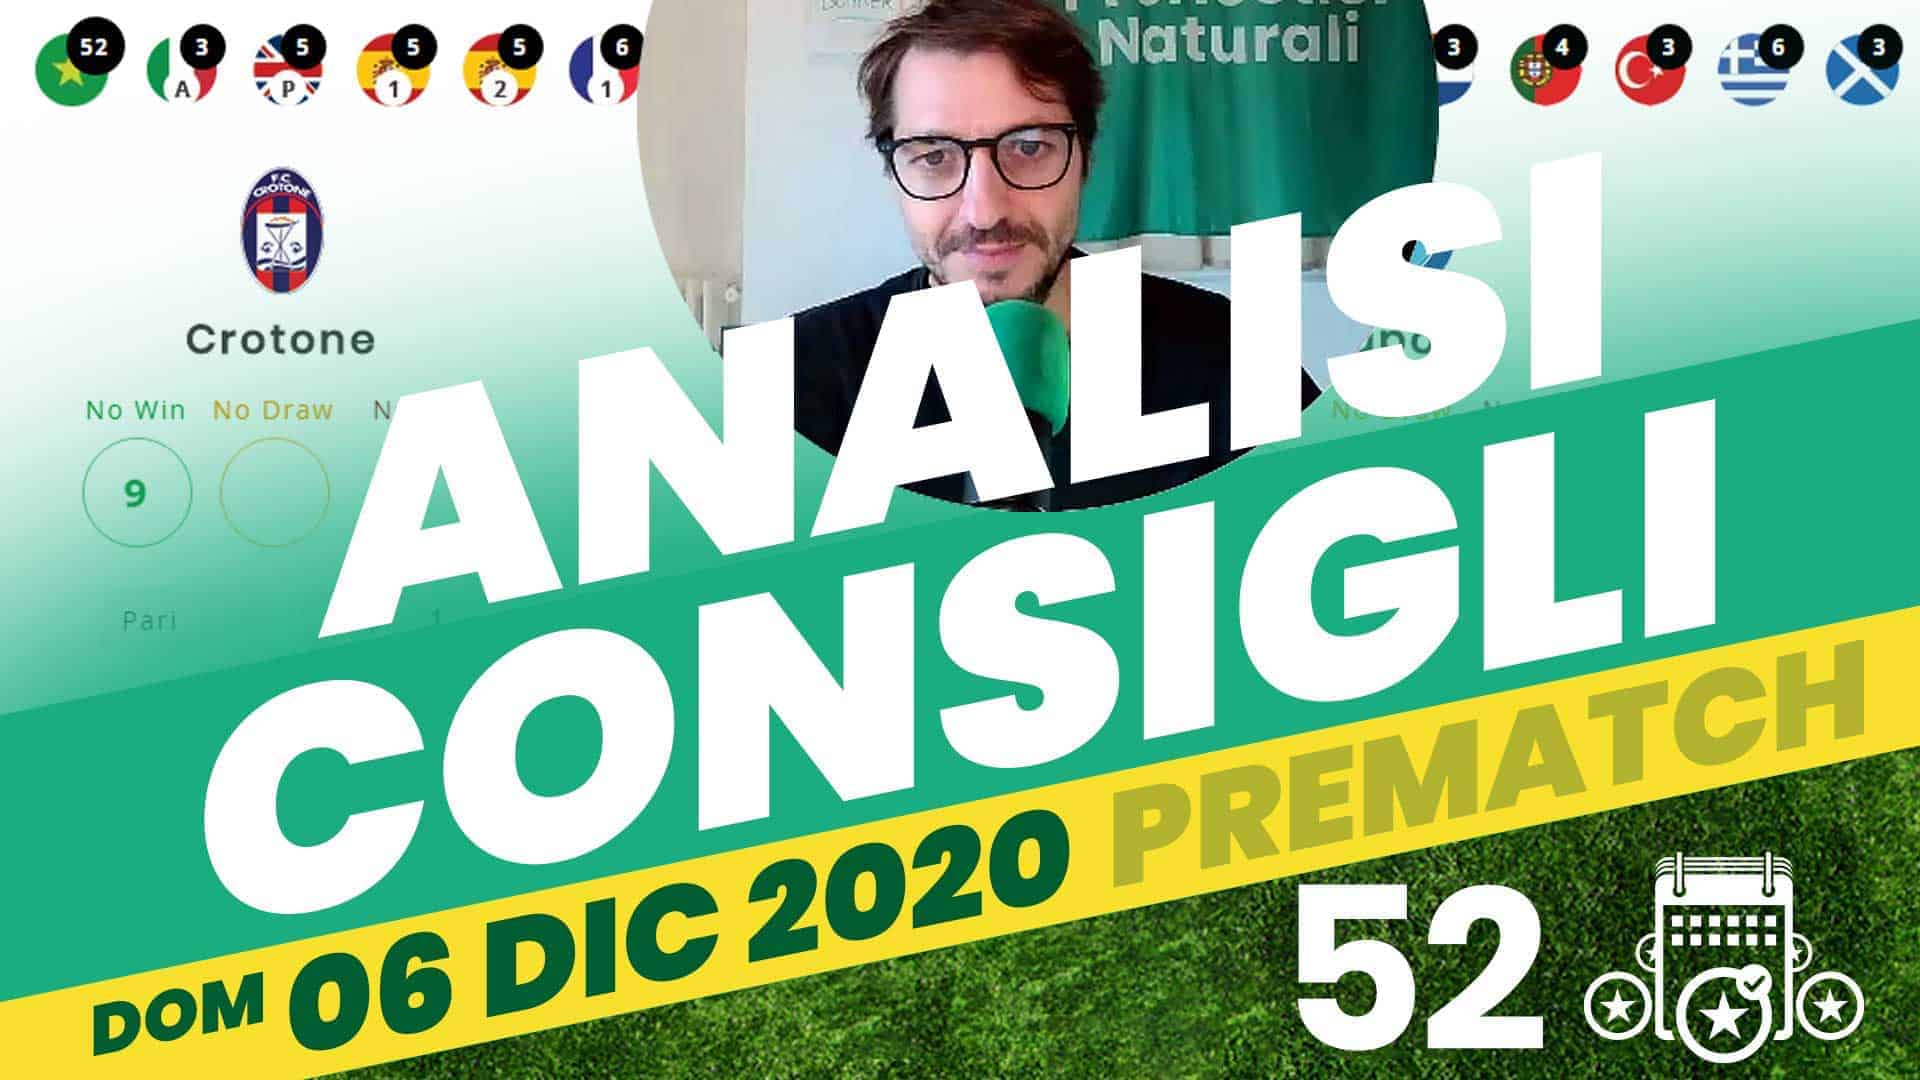 Pronostici Naturali Video Analisi Scommesse Betting Calcio Pre Partite Domenica 6 Dicembre 2020